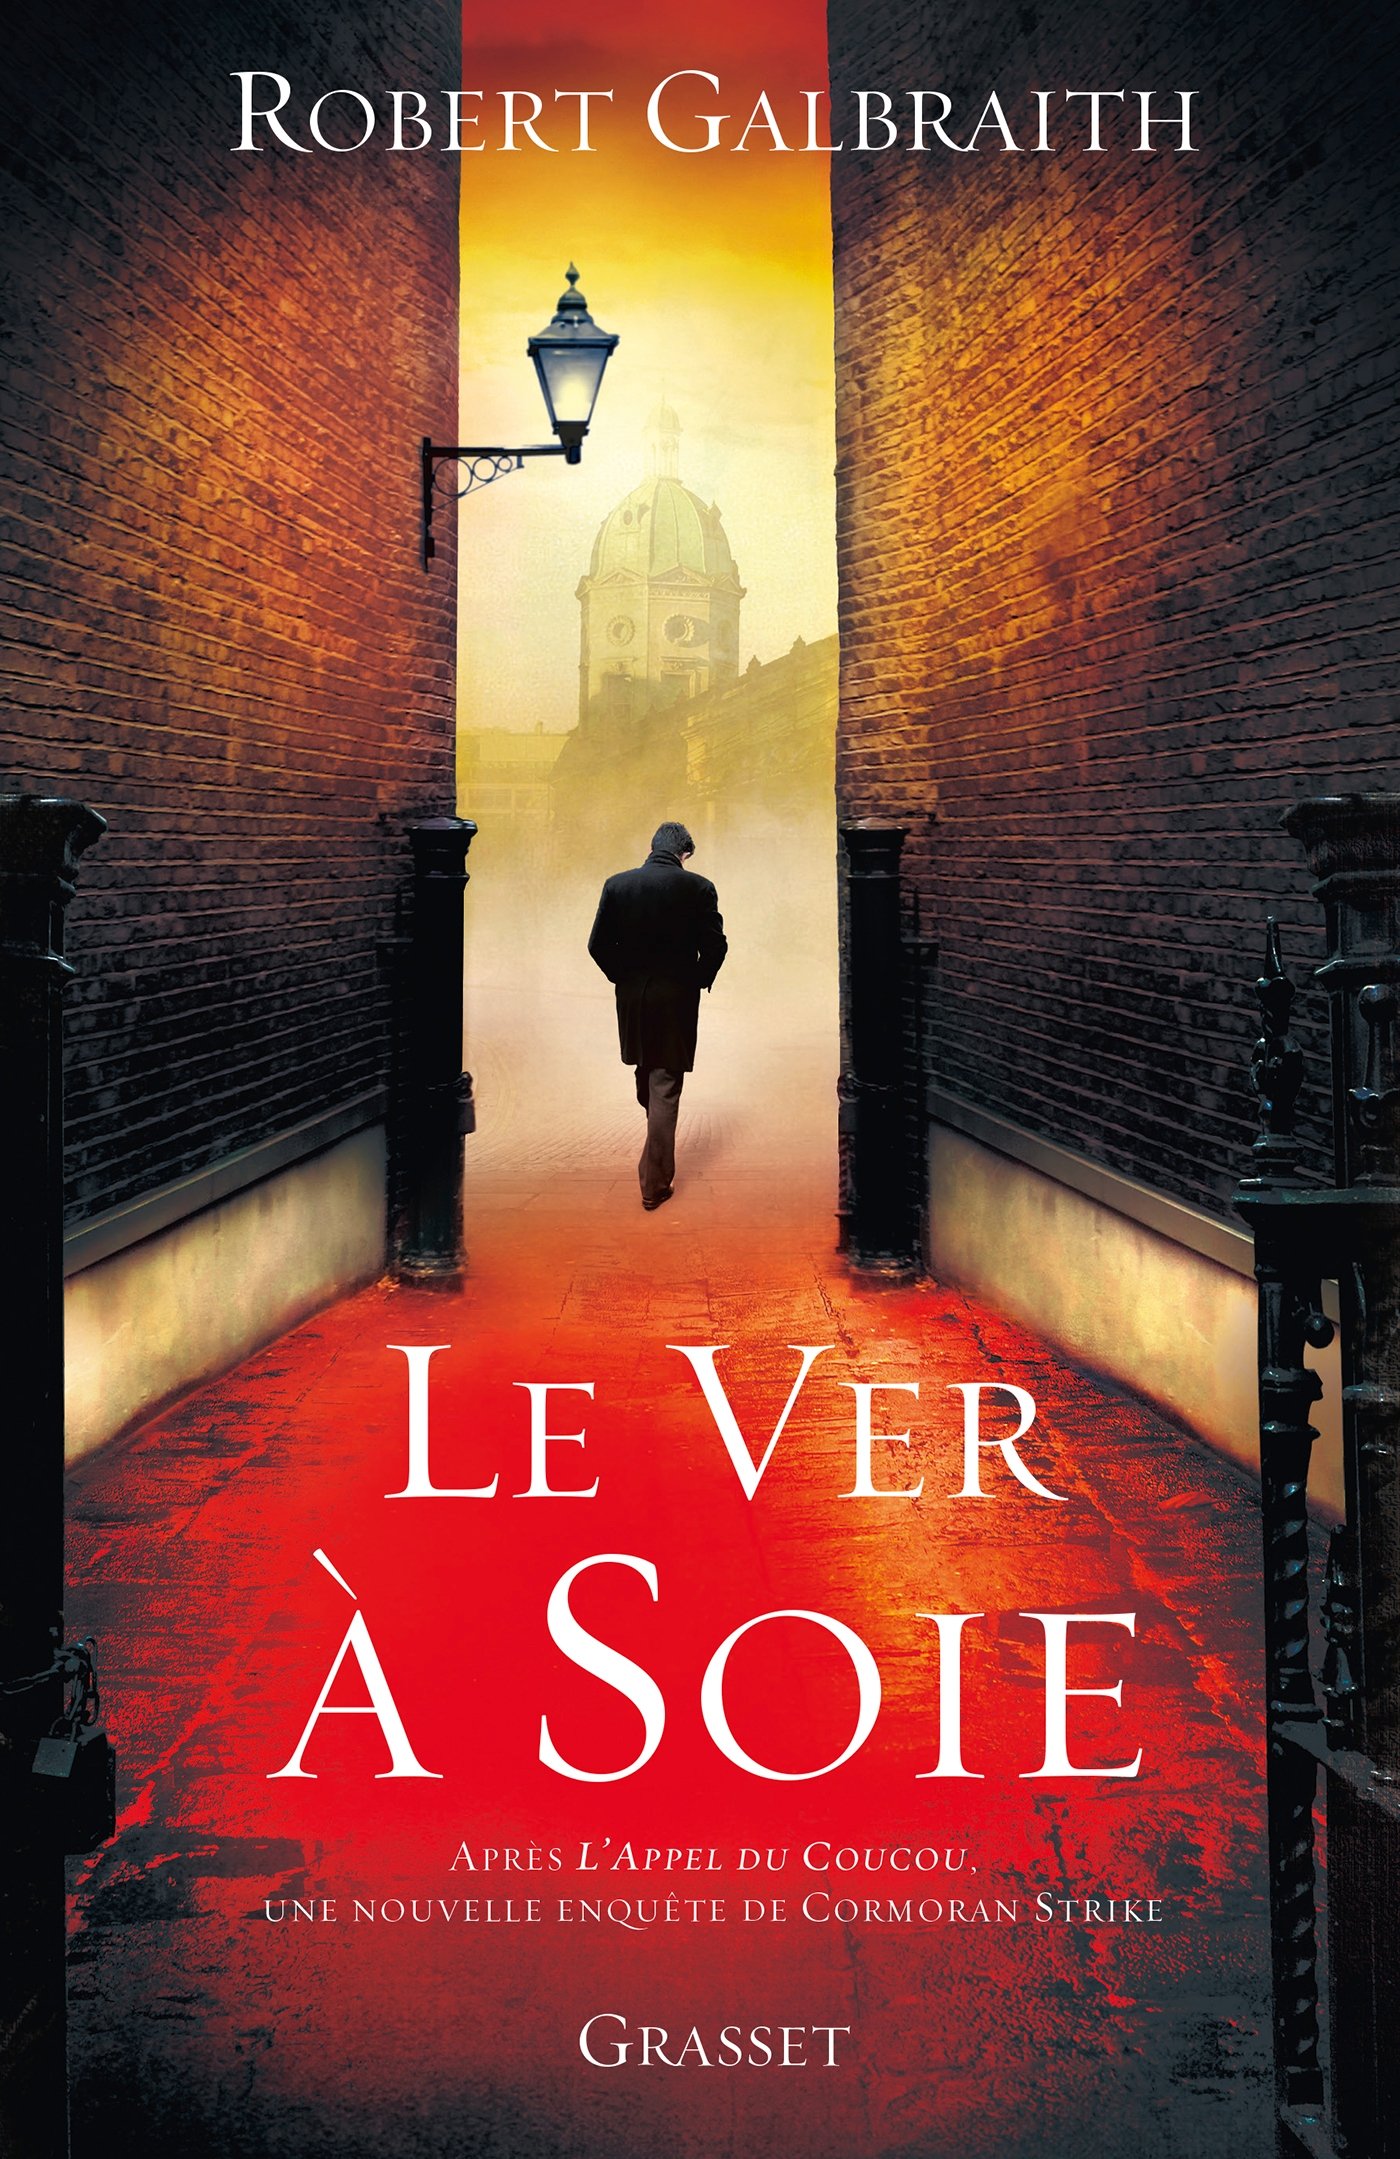 Le ver à soie: roman - traduit de l'anglais par Florianne VIdal (Grand Format) (French Edition)